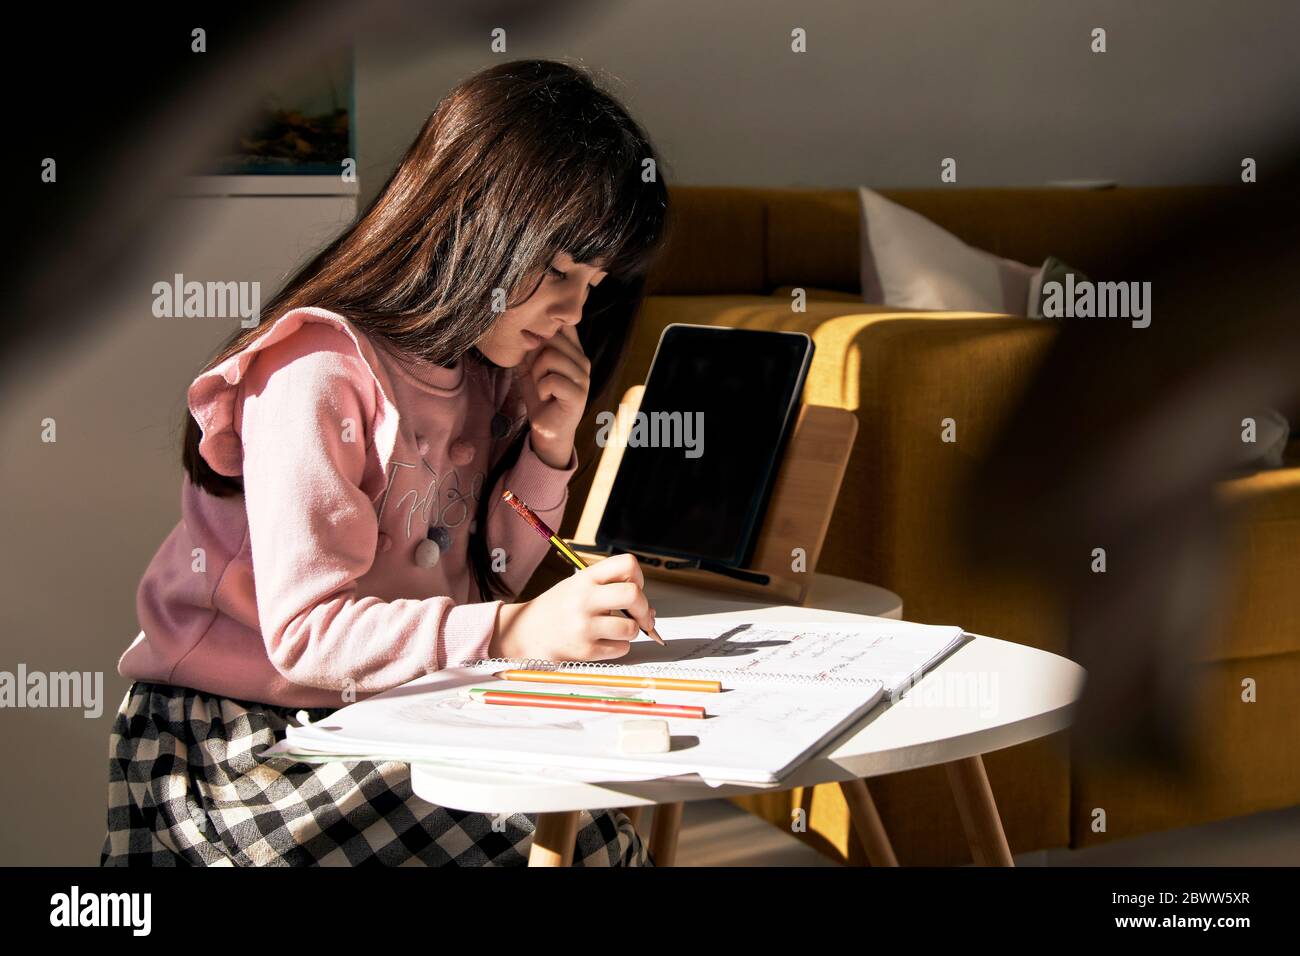 Girl doing homework in the living room Stock Photo